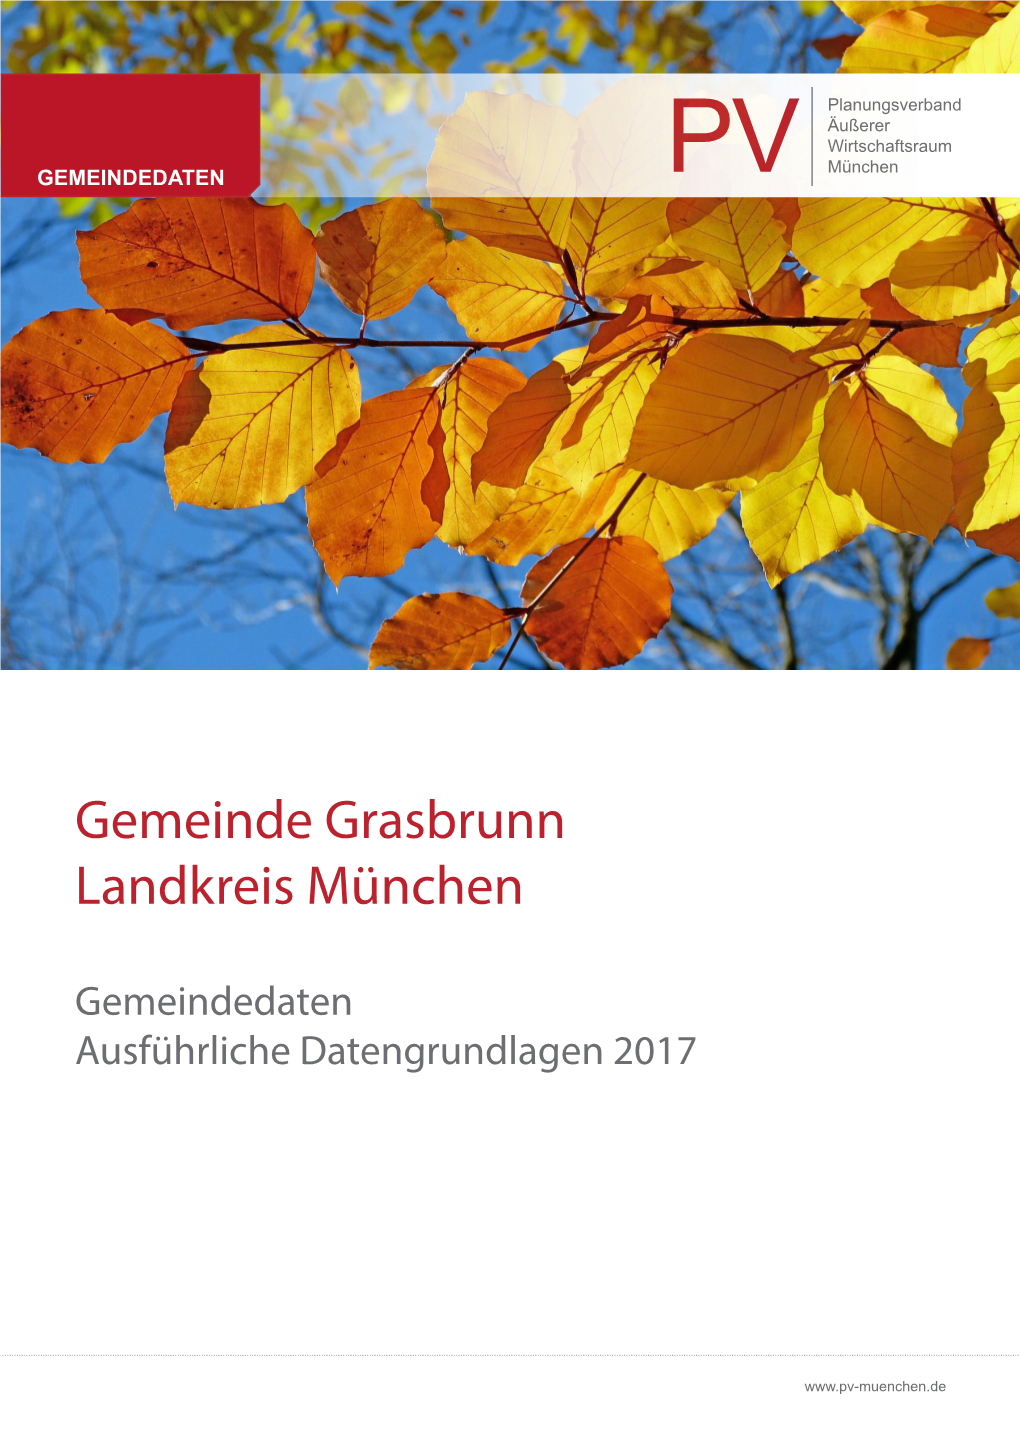 Gemeinde Grasbrunn Landkreis München